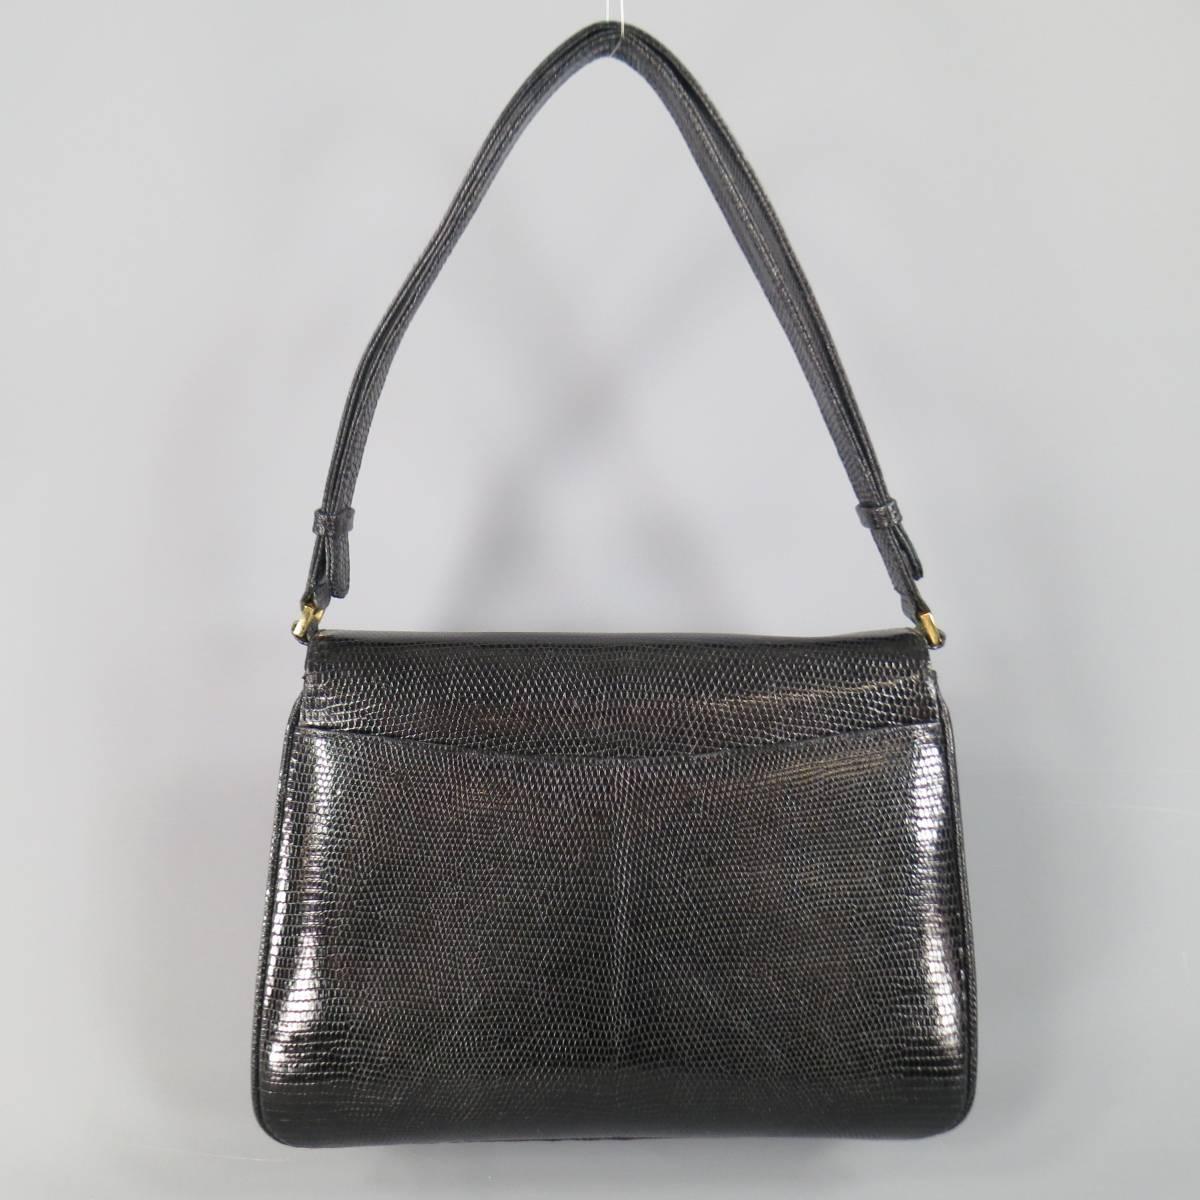 Vintage GUCCI Black Lizard Skin Leather Gold G Handbag 3